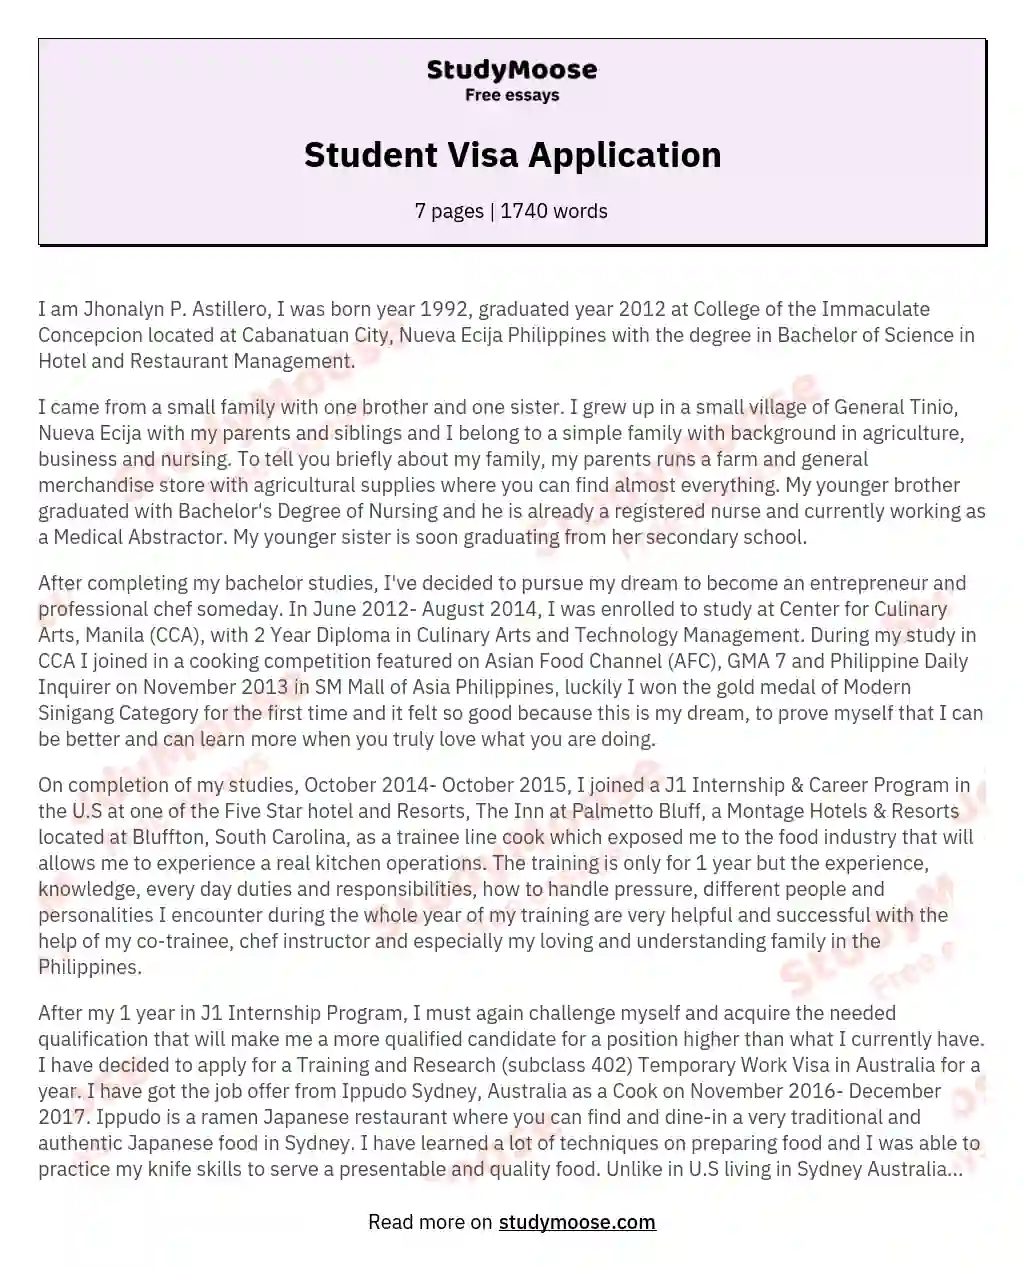 Student Visa Application essay